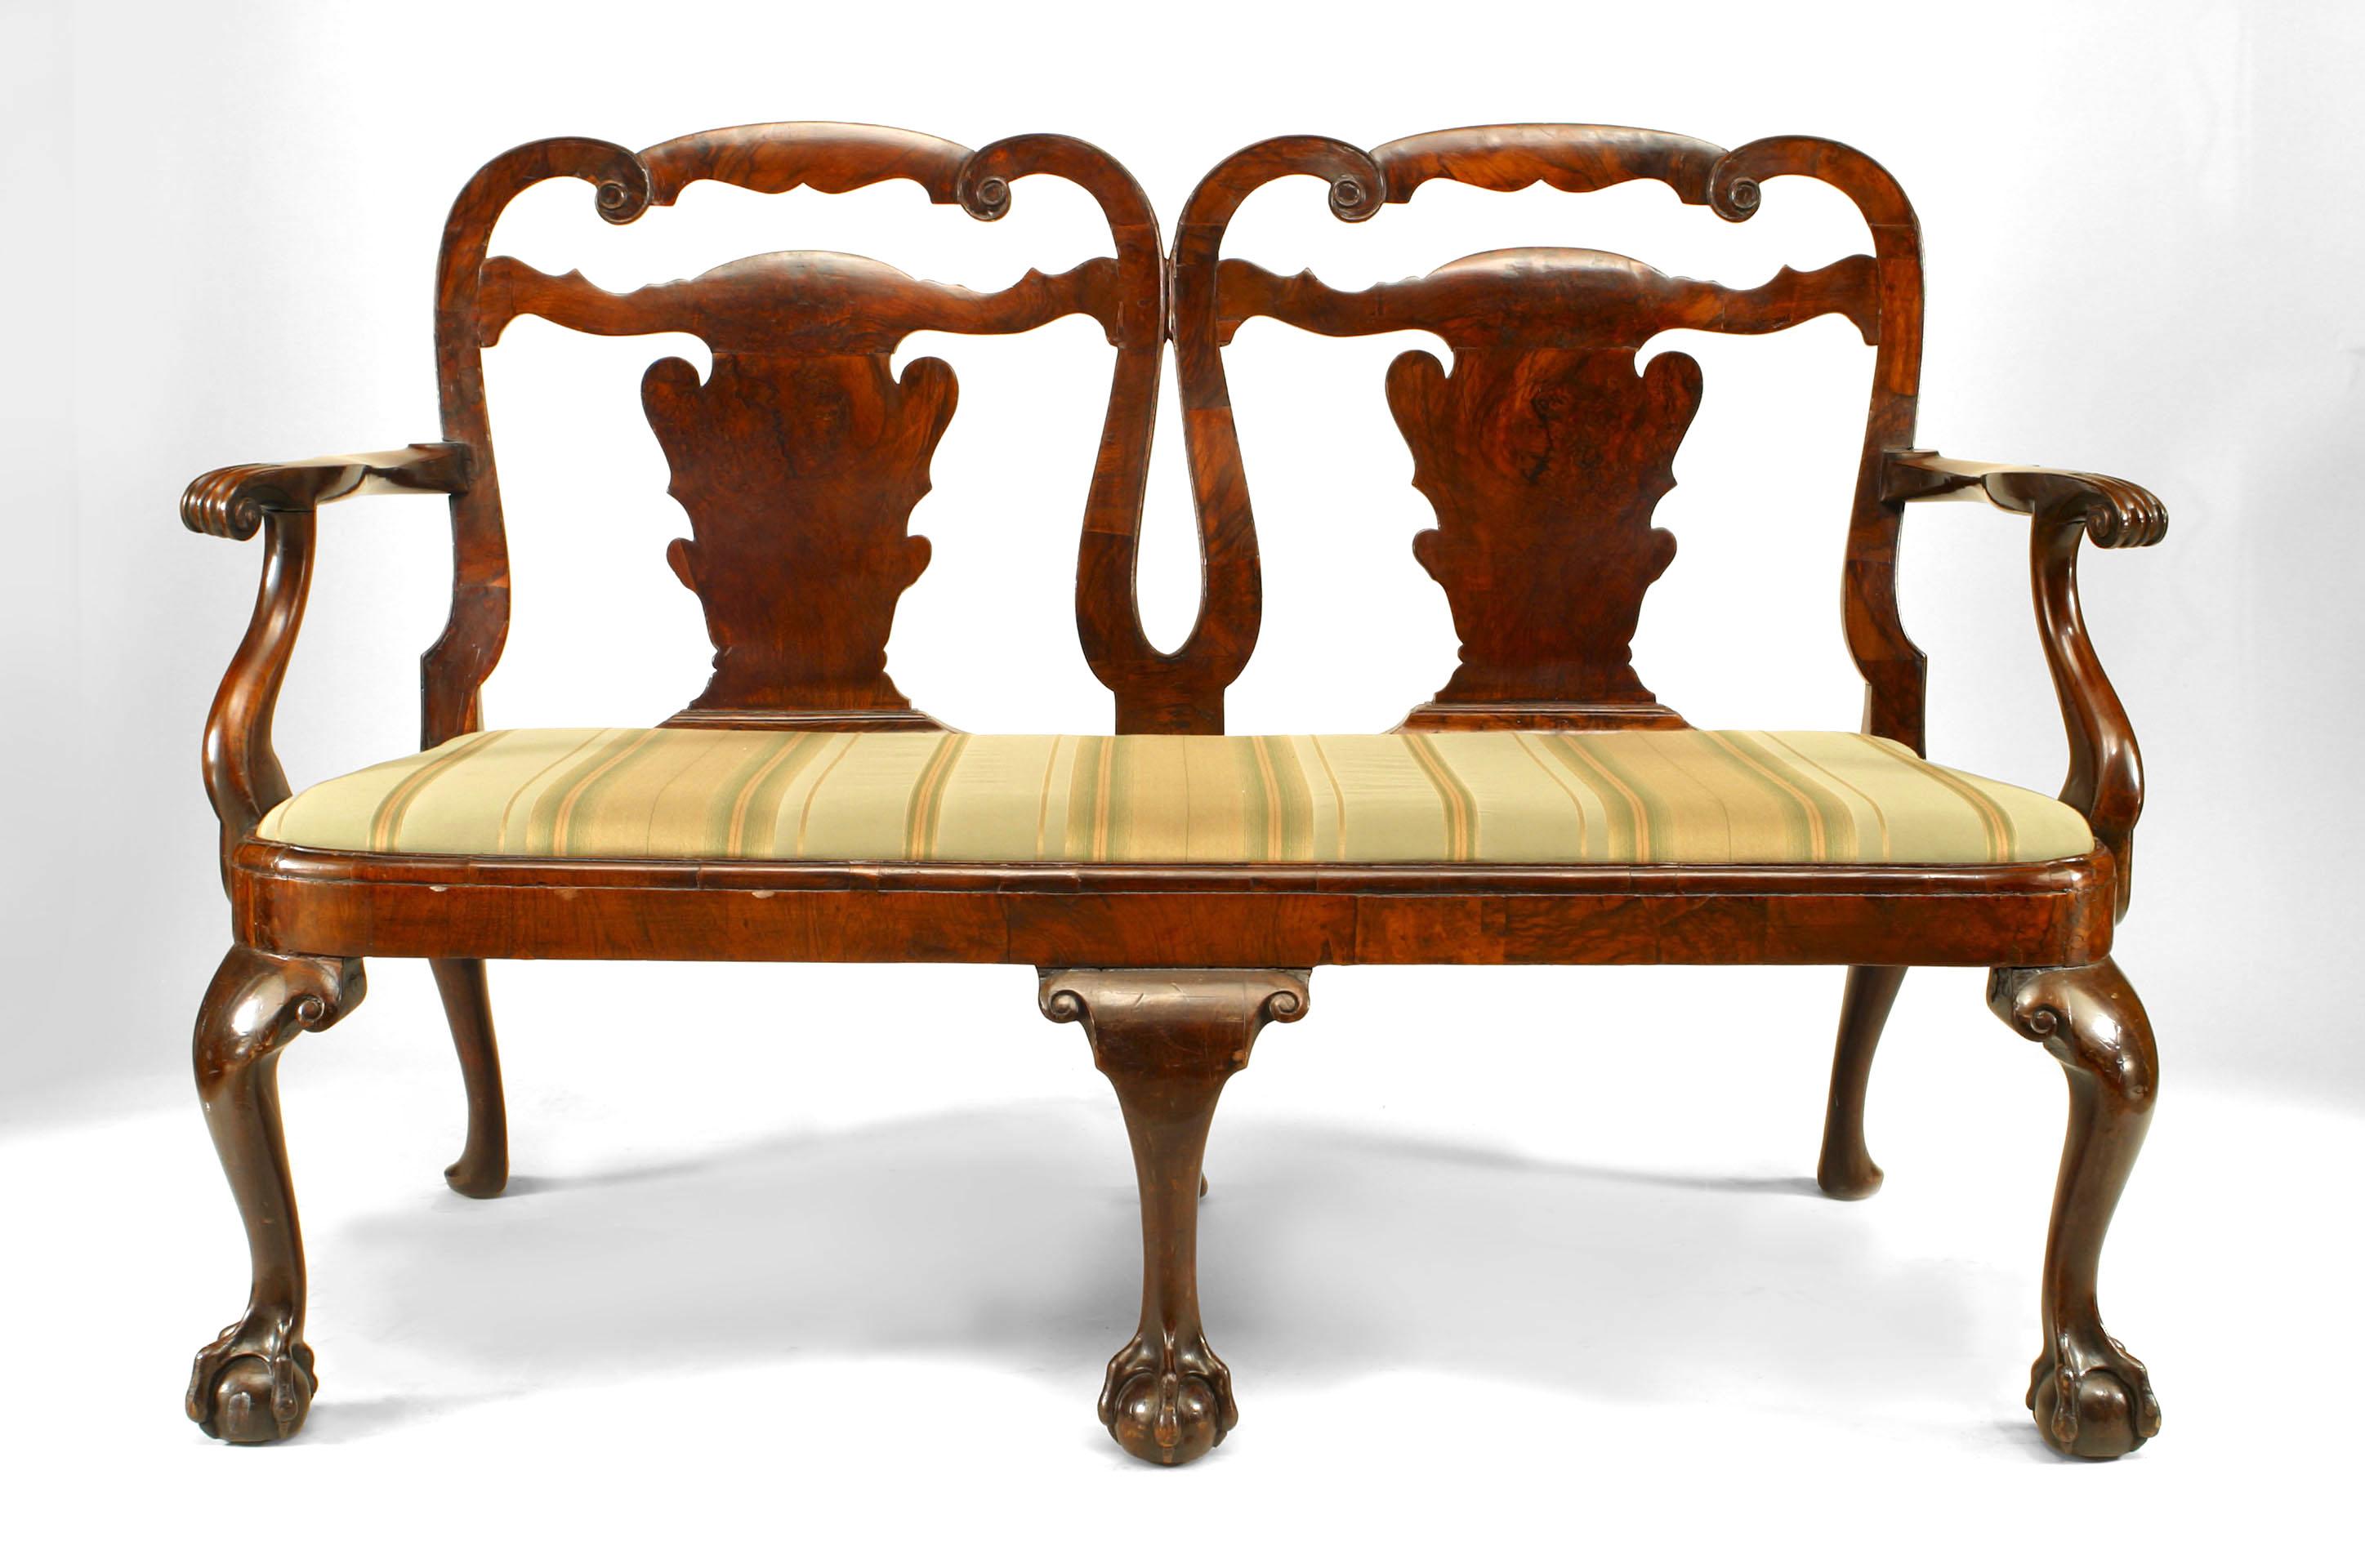 Englischer Chippendale-Stil (18/19. Jh.) Mahagoni-Doppelstuhl mit Rückenlehne, Sitzfläche aus Samt.
